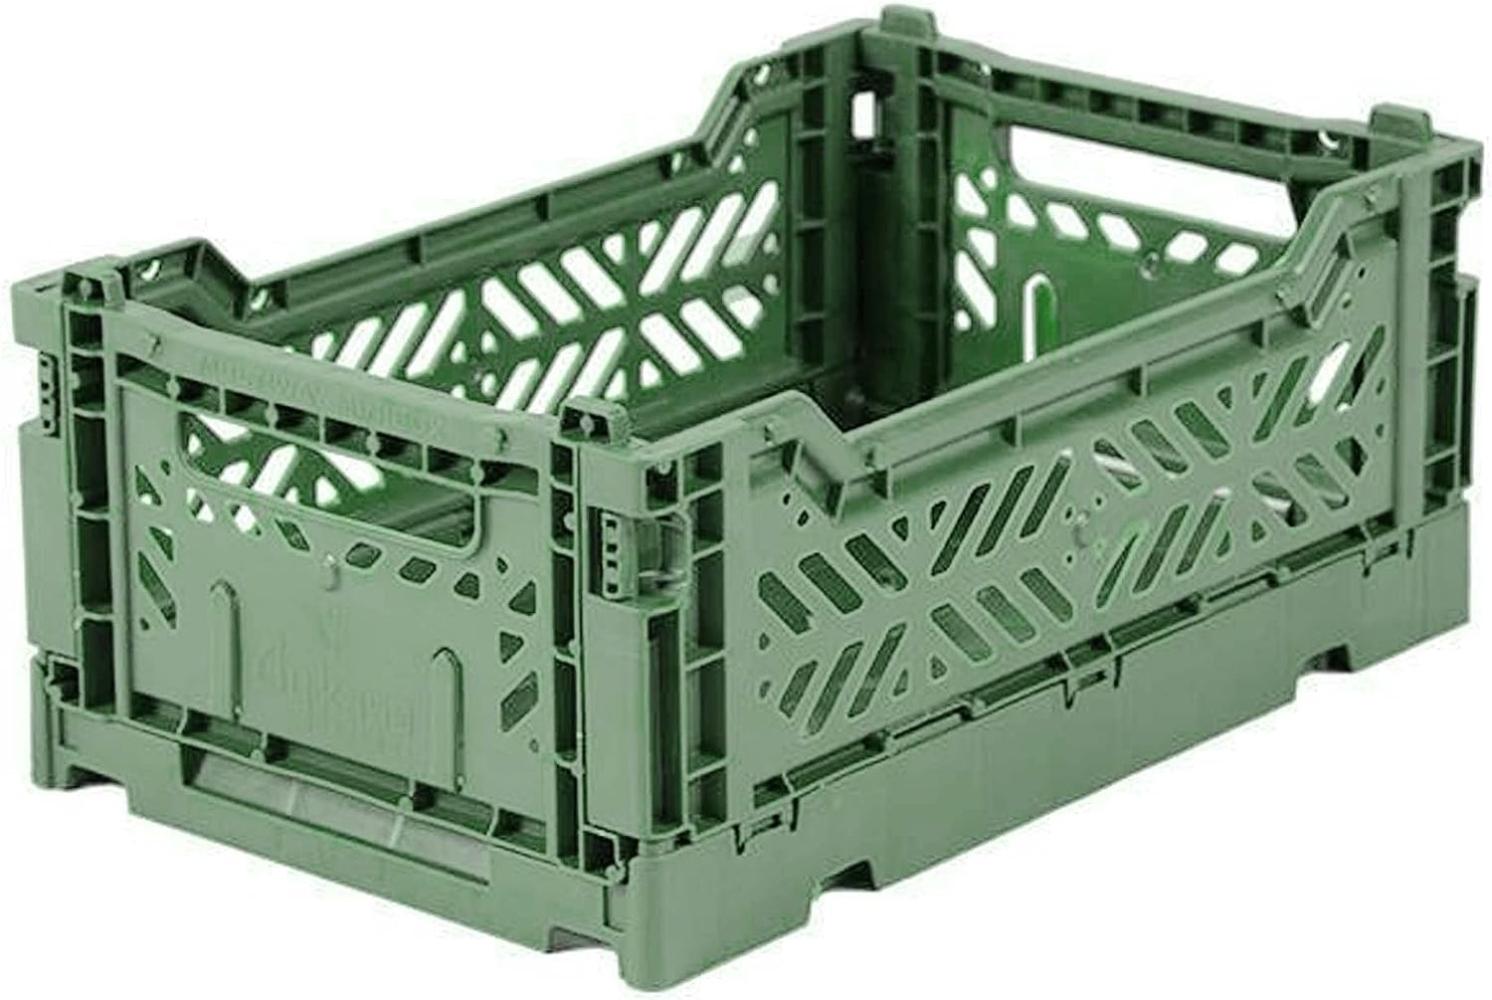 AY-KASA lila, Faltbare Aufbewahrungsbox mit 26,6x17,1x10,5 cm und 4 Liter Volumen - Bunte Klappbox zum Einkaufen und Aufbewahren - Stabile Faltbox aus Plastik - Organizer Box Bild 1